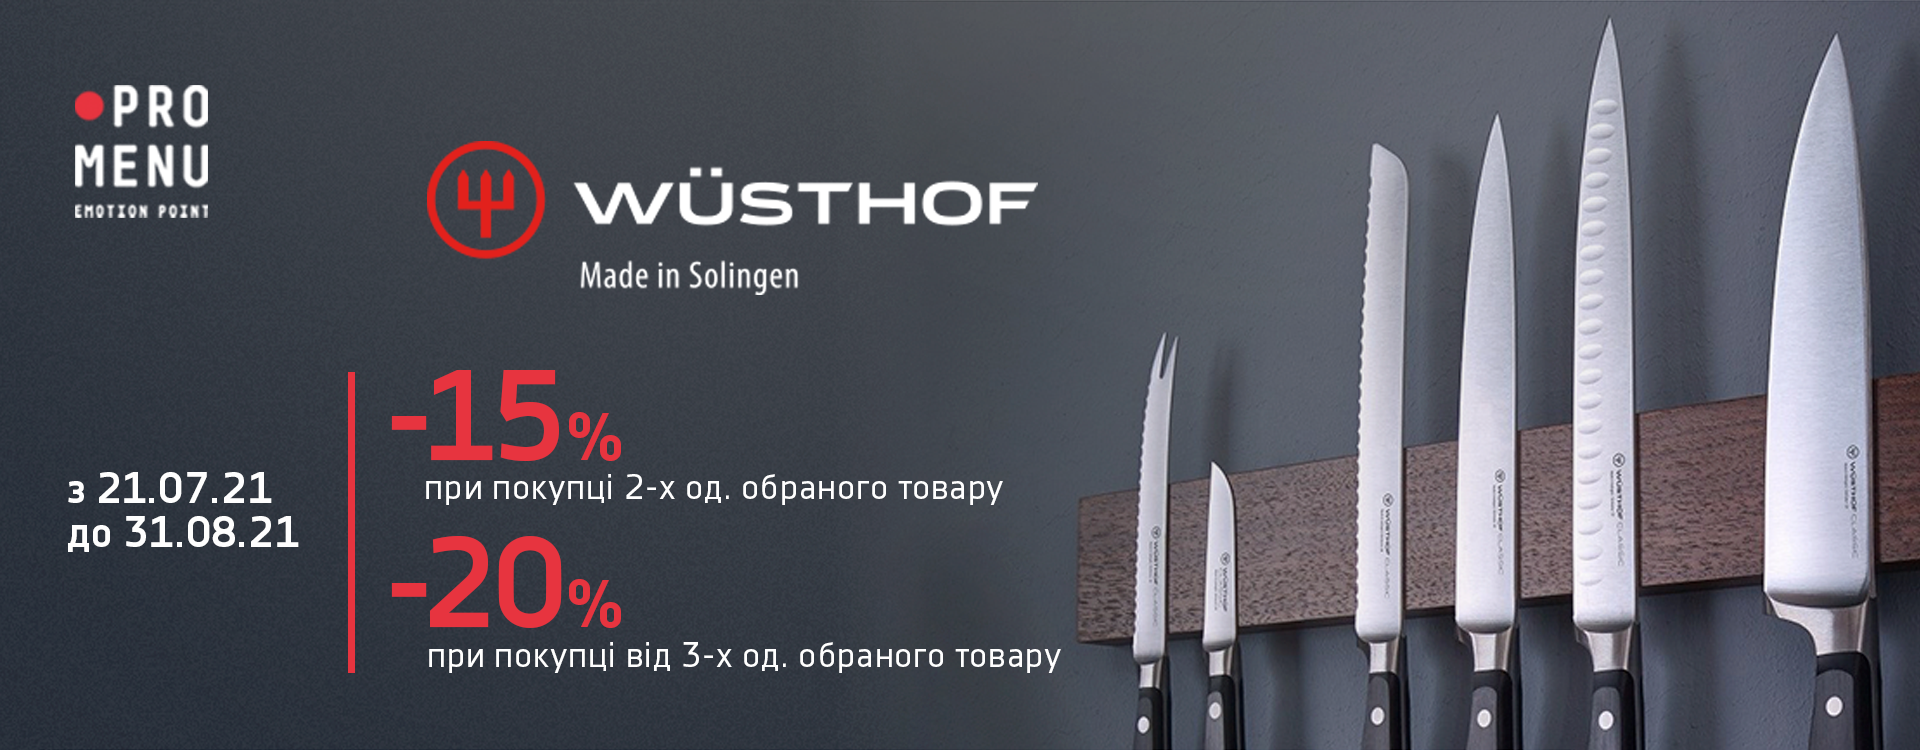 знижки до 20% на ножі від Wüsthof в Pro Menu